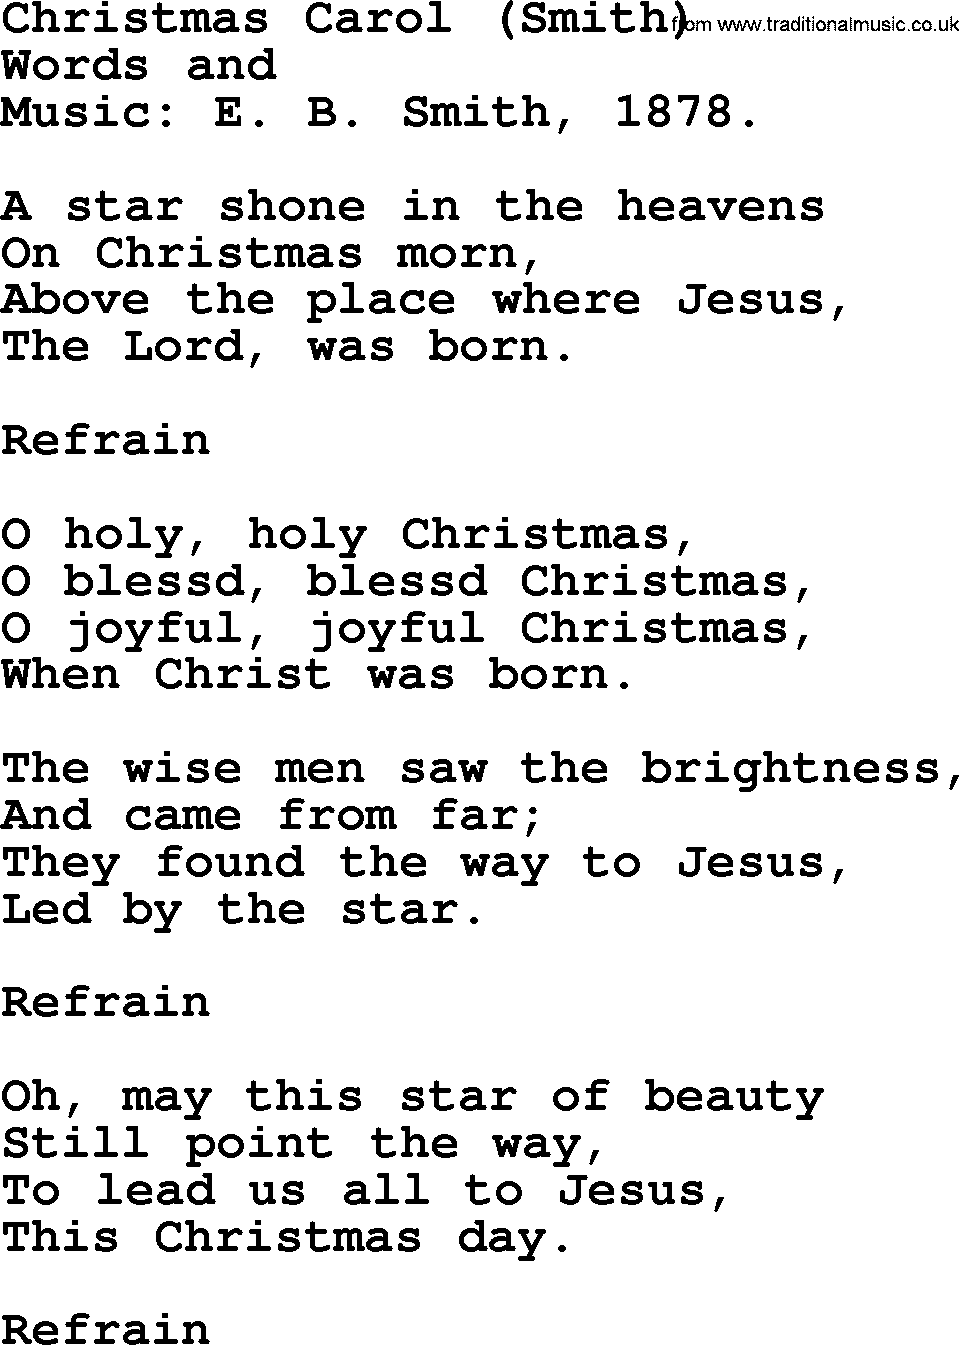 Christmas Hymns, Carols and Songs, title: Christmas Carol (smith), lyrics with PDF